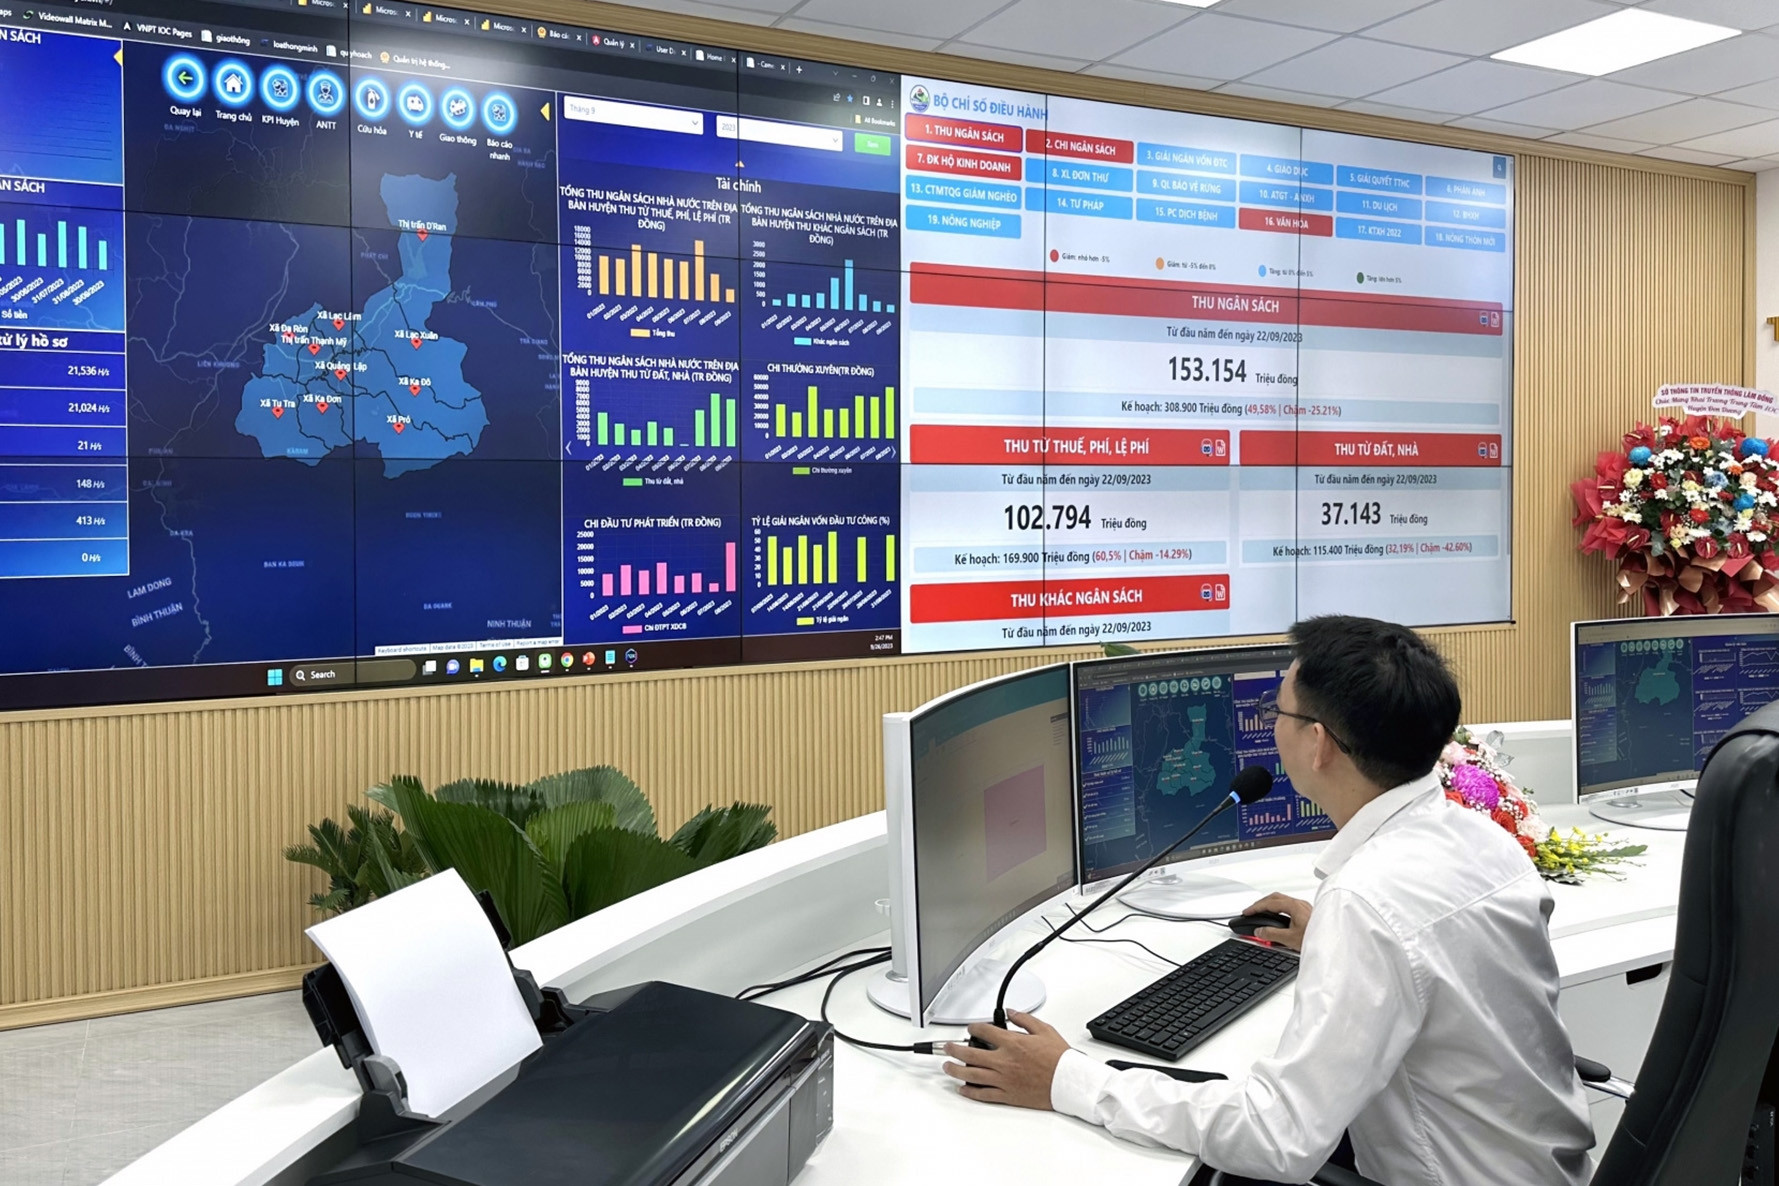 Trung tâm điều hành thông minh của huyện ở Lâm Đồng vào hoạt động